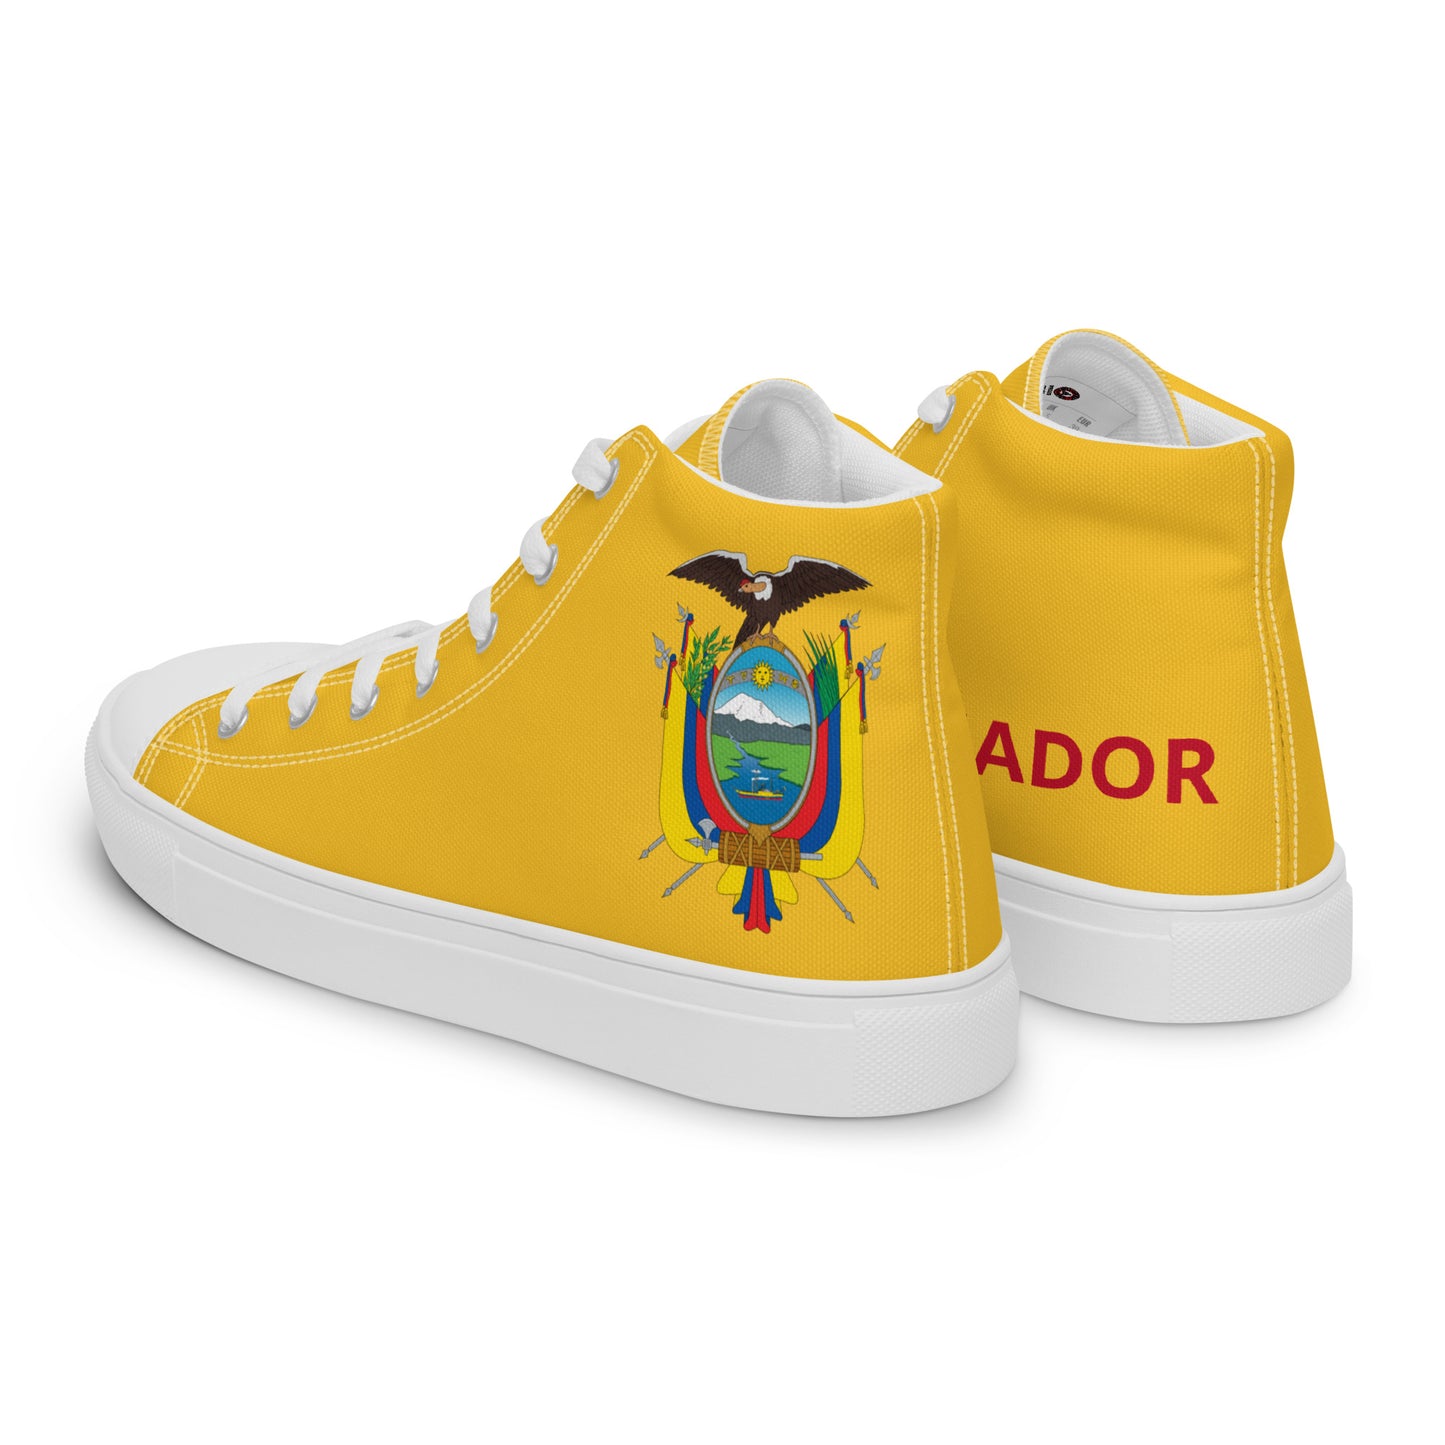 Ecuador - Women - Yellow - High top shoes